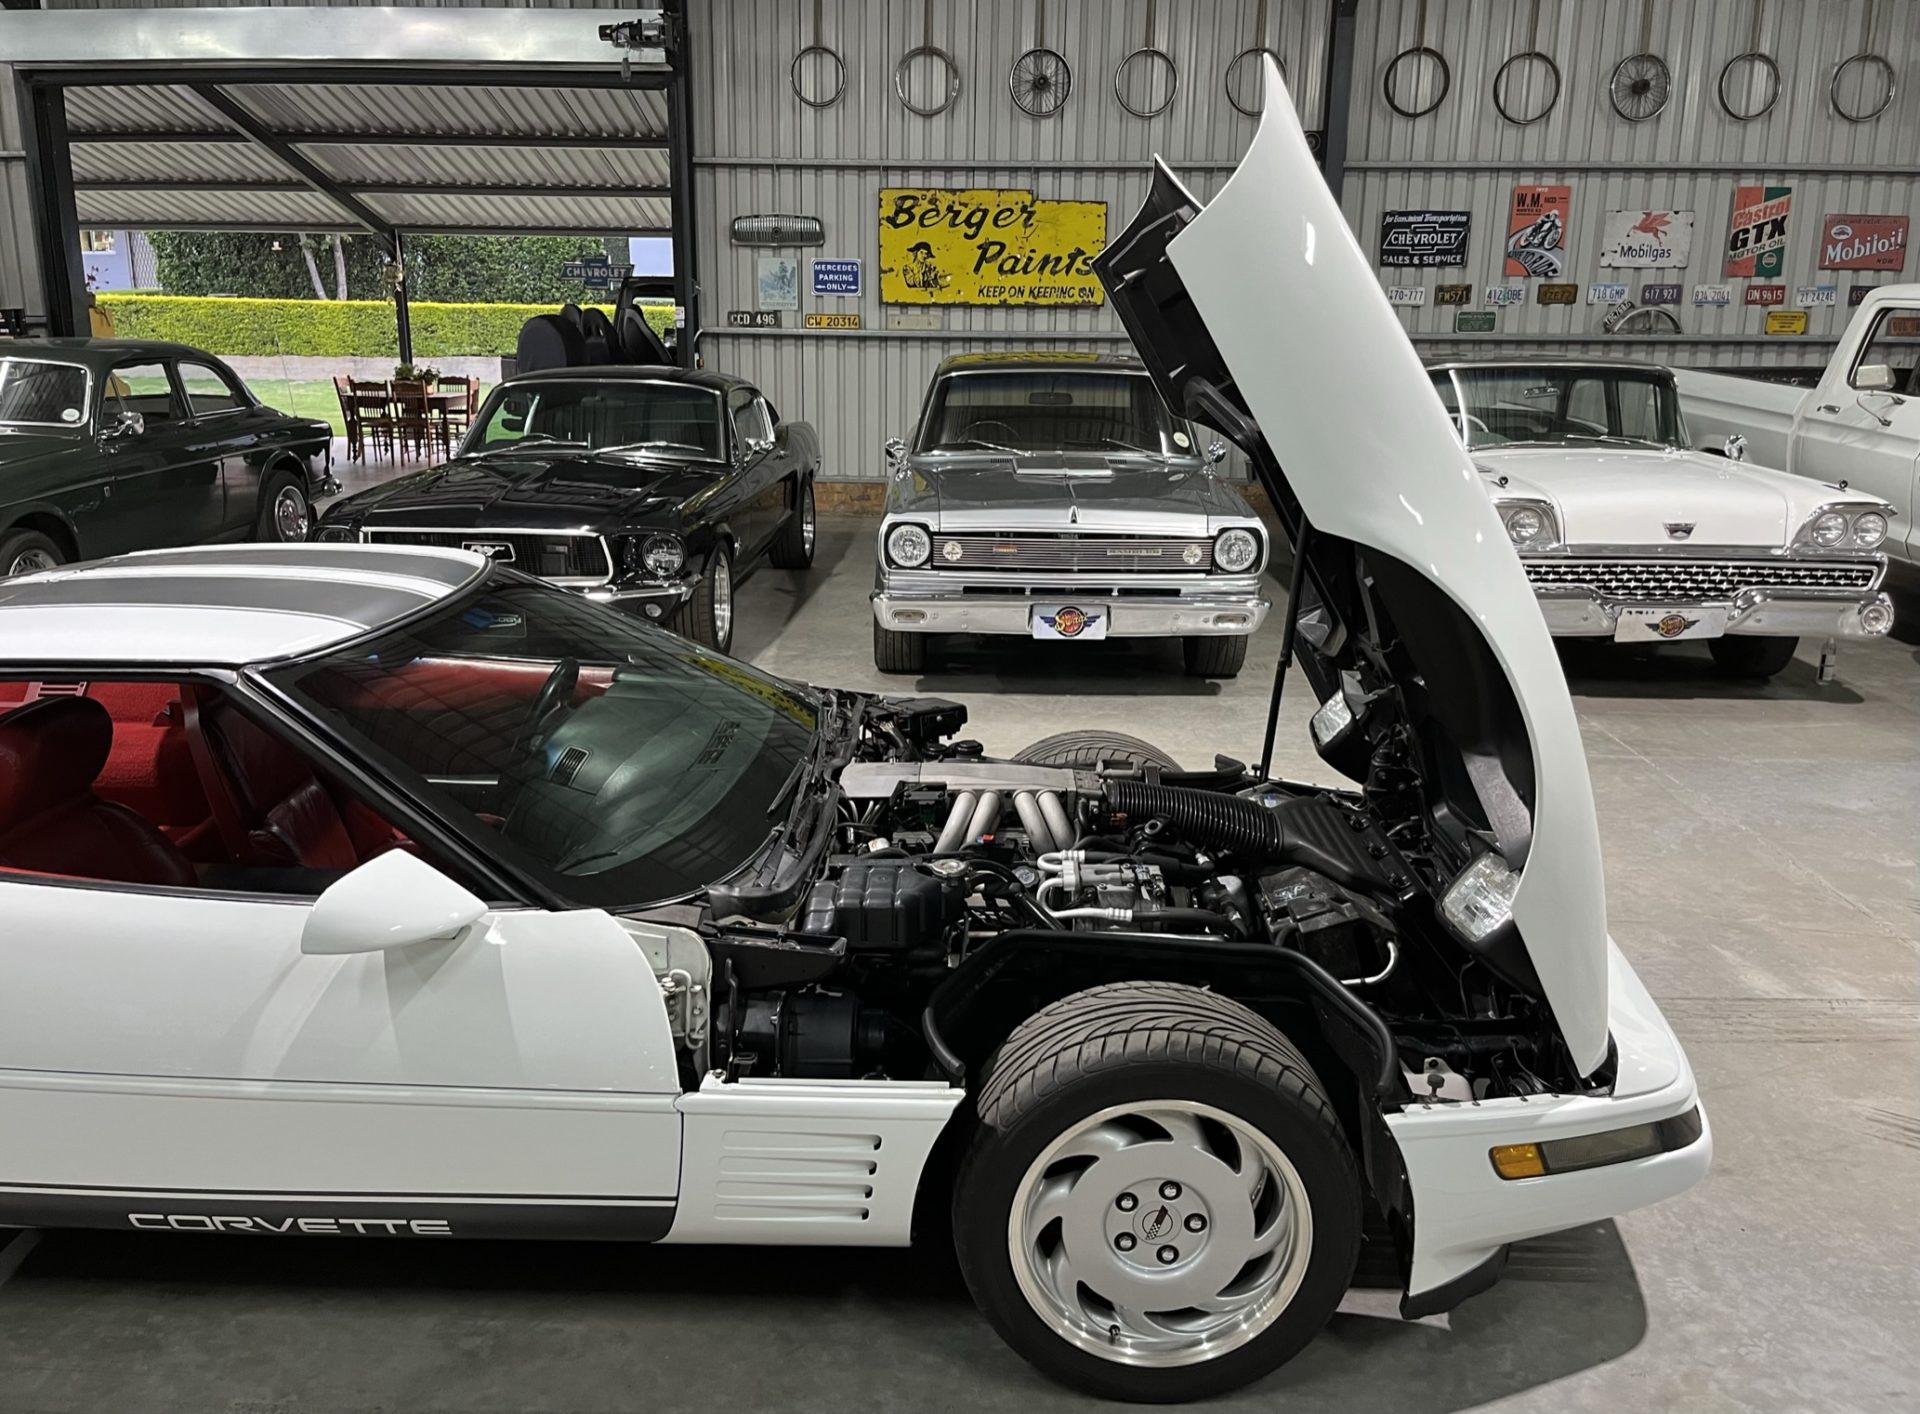 1991 Corvette C4